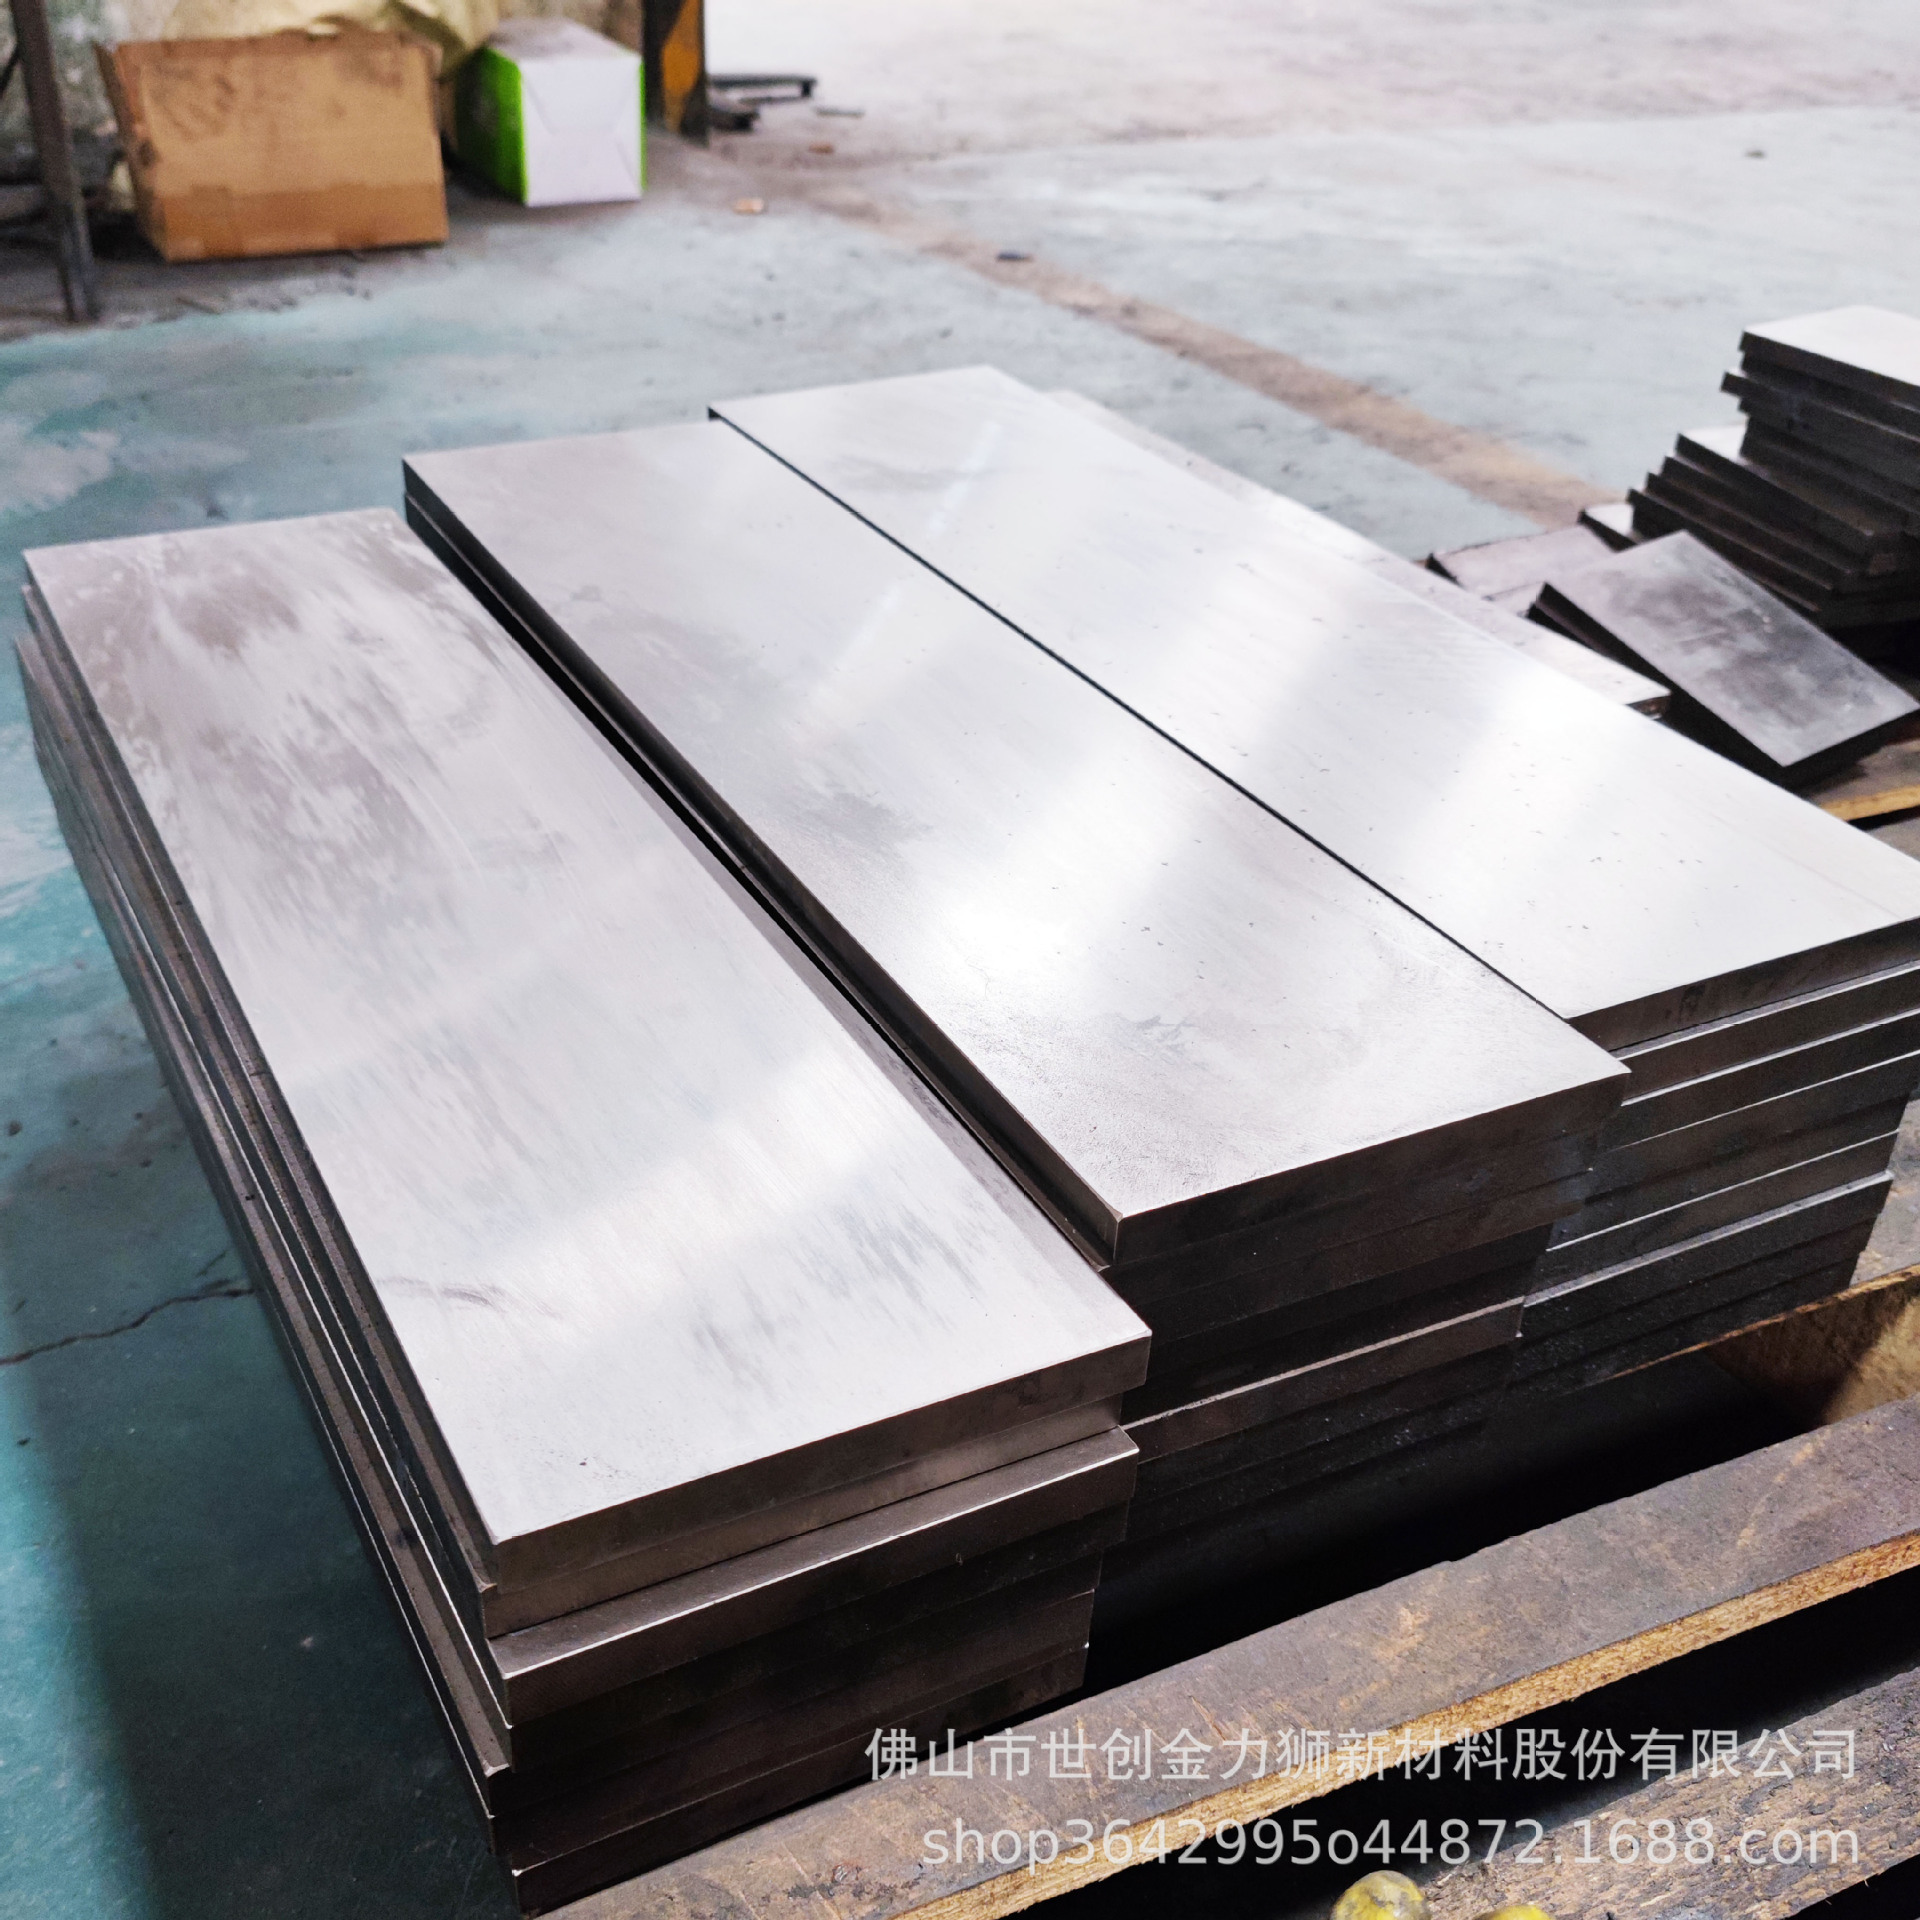 Pad printing steel plate, spring steel, bearing steel, oil steel, chrome steel